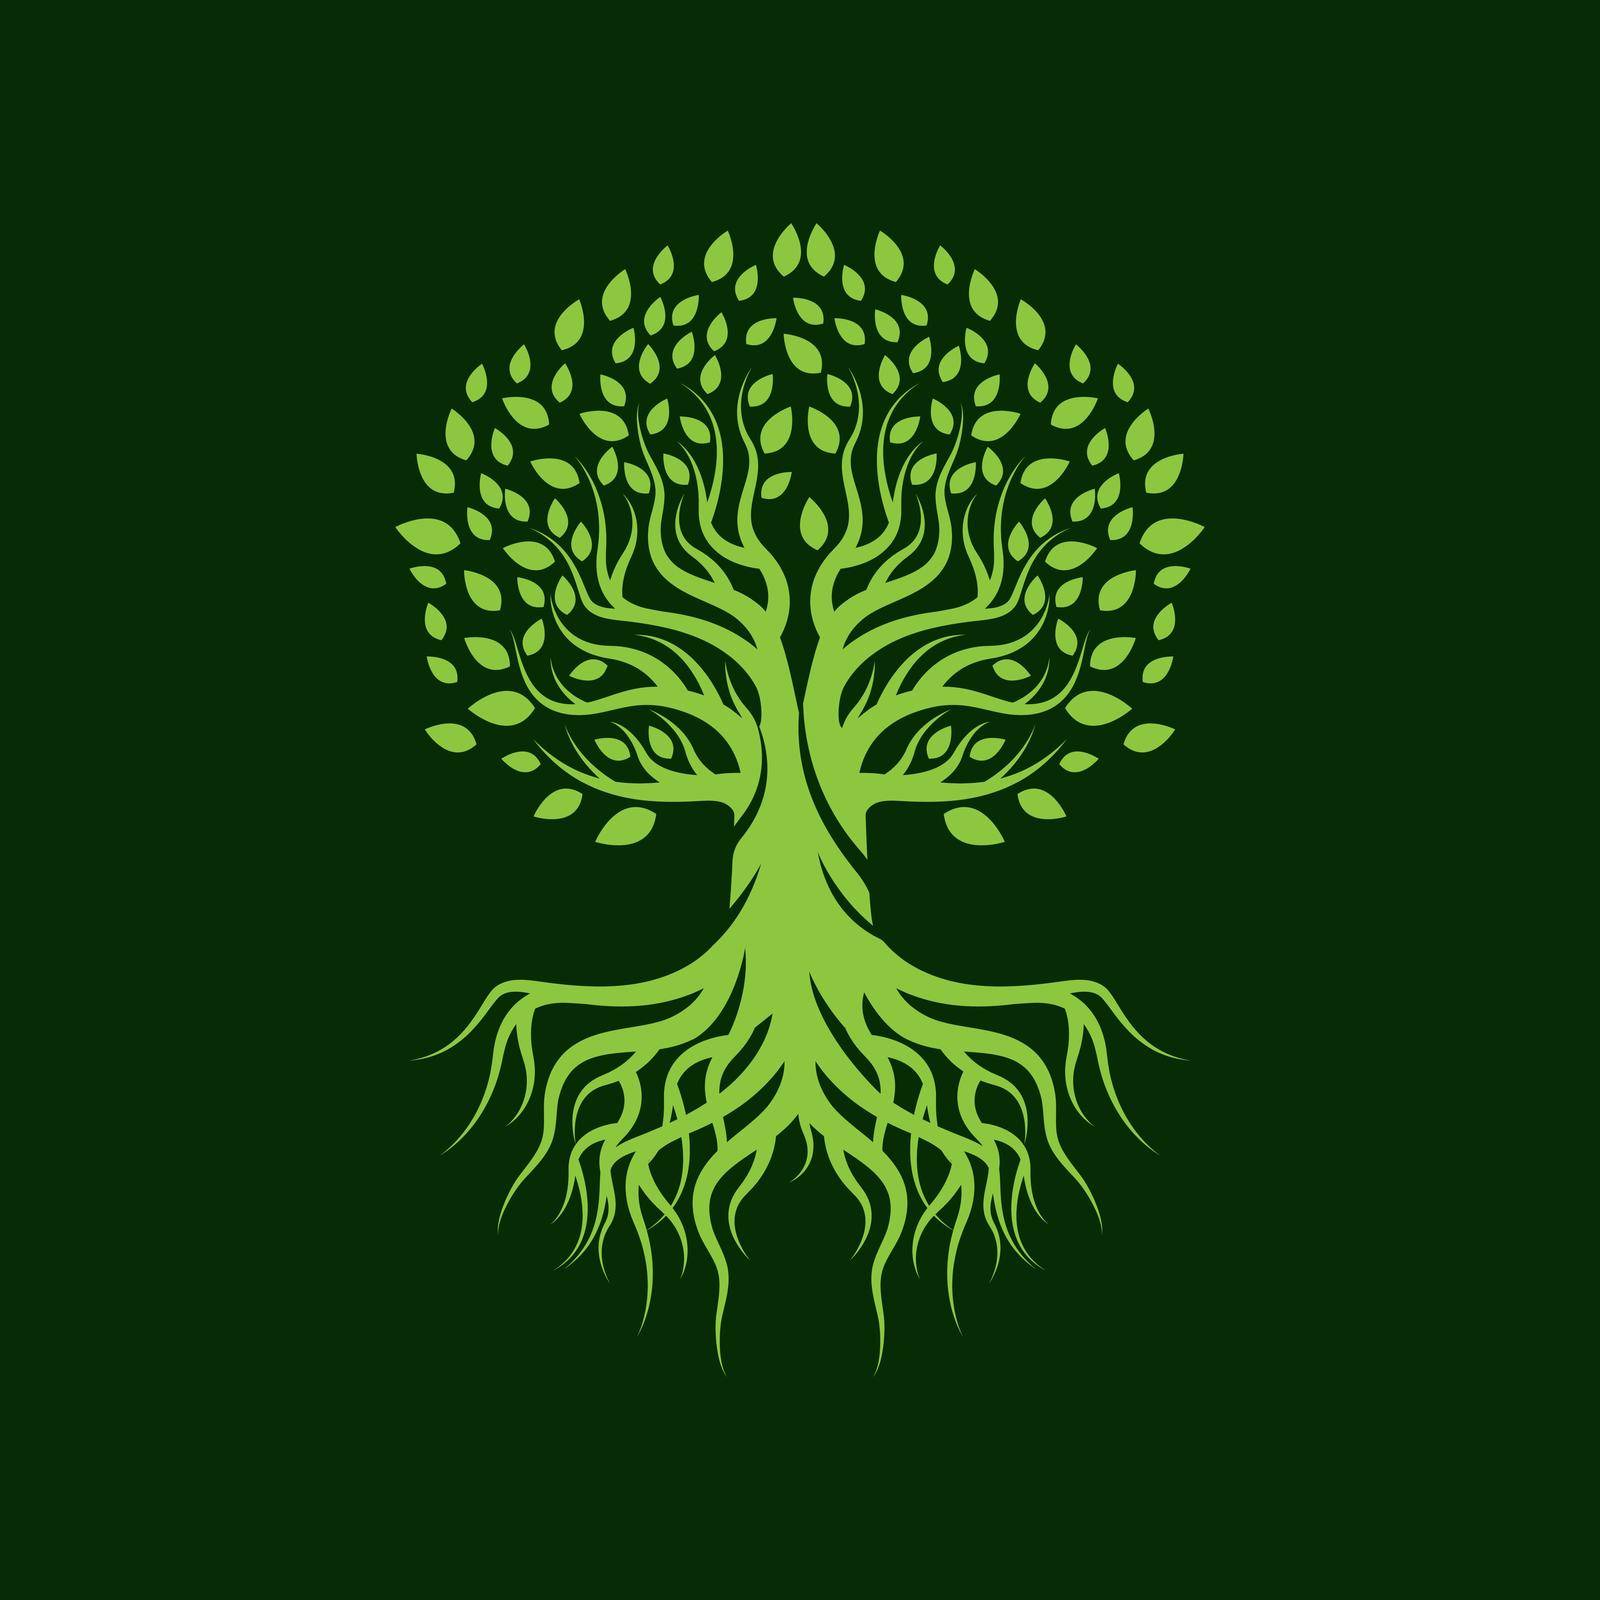 Tree icon logo vector icon by Attades19